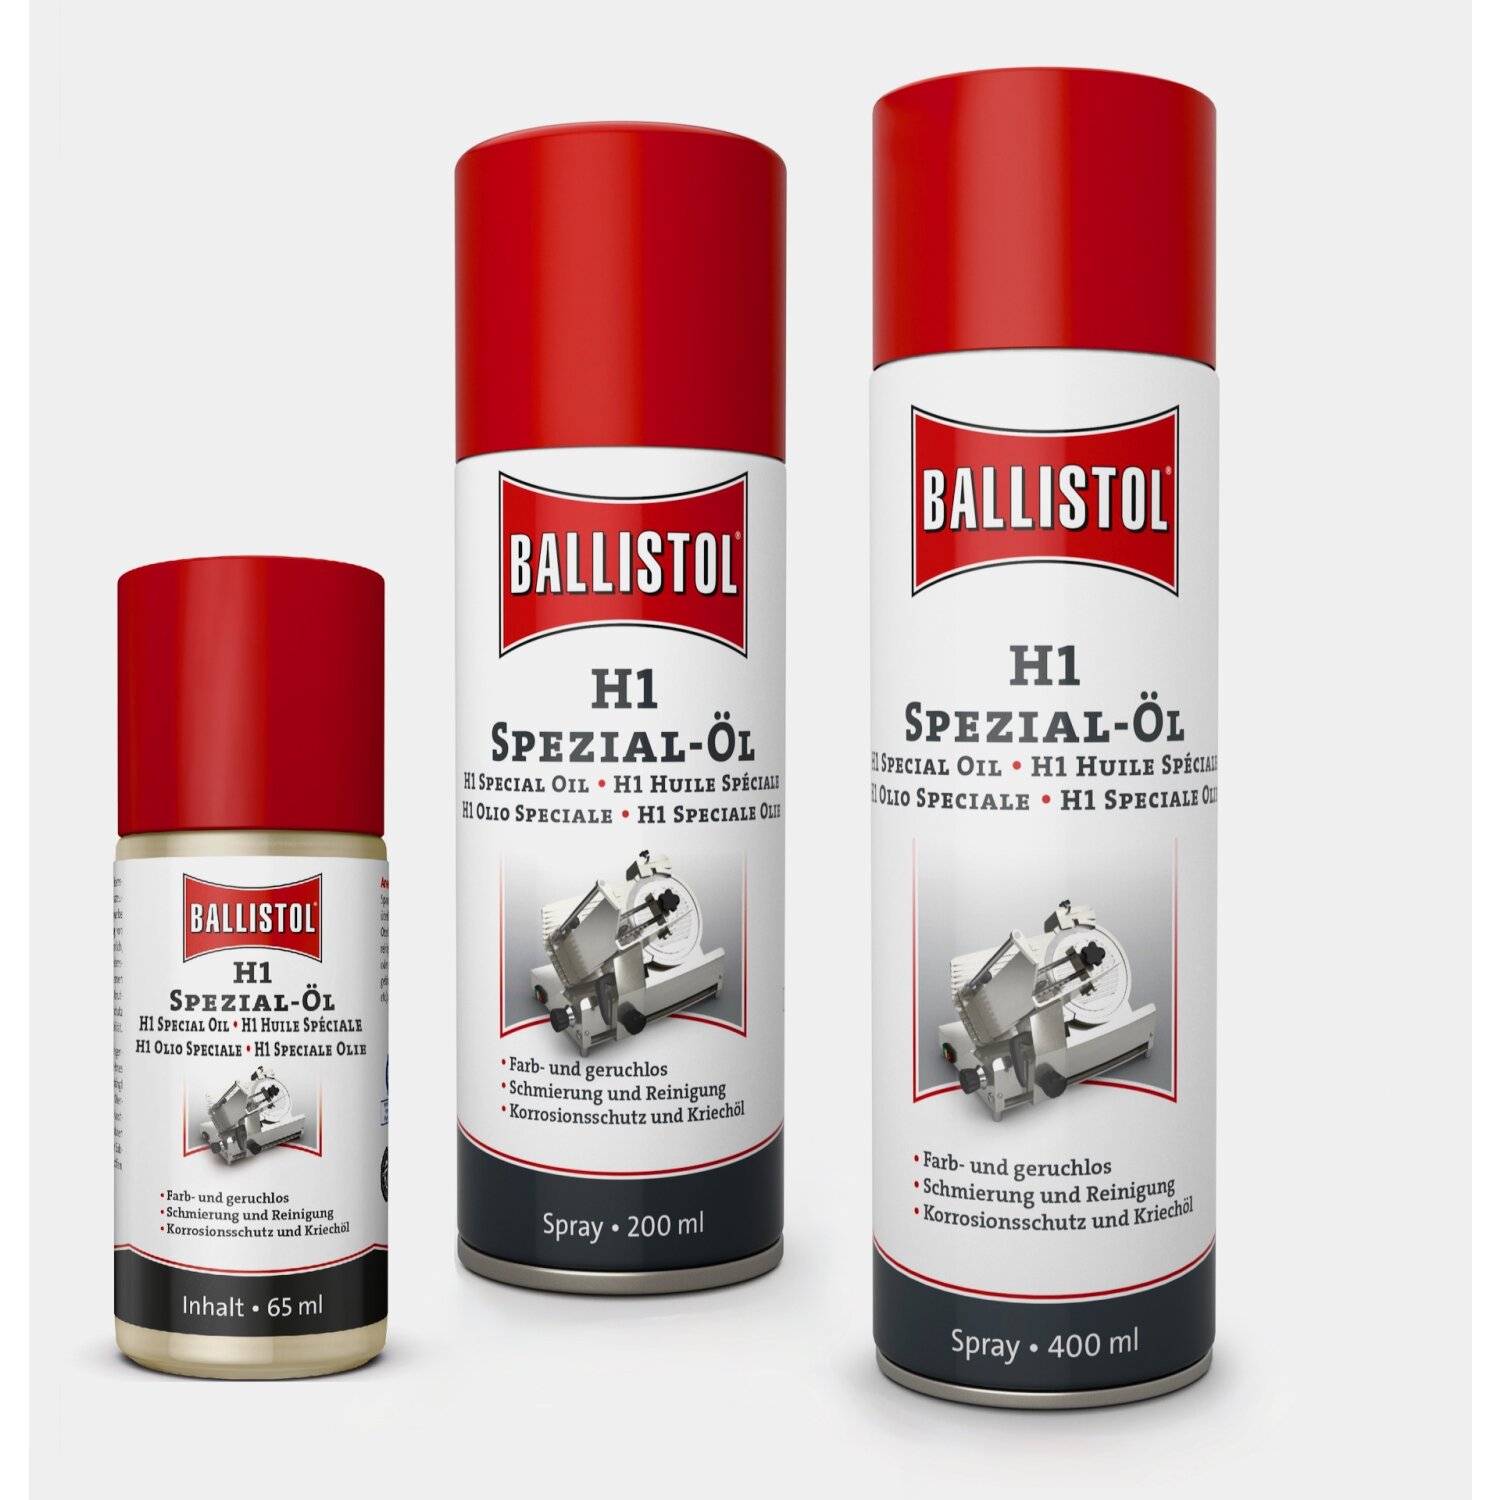 Ballistol Teflon Spray 400ml - Ballistol